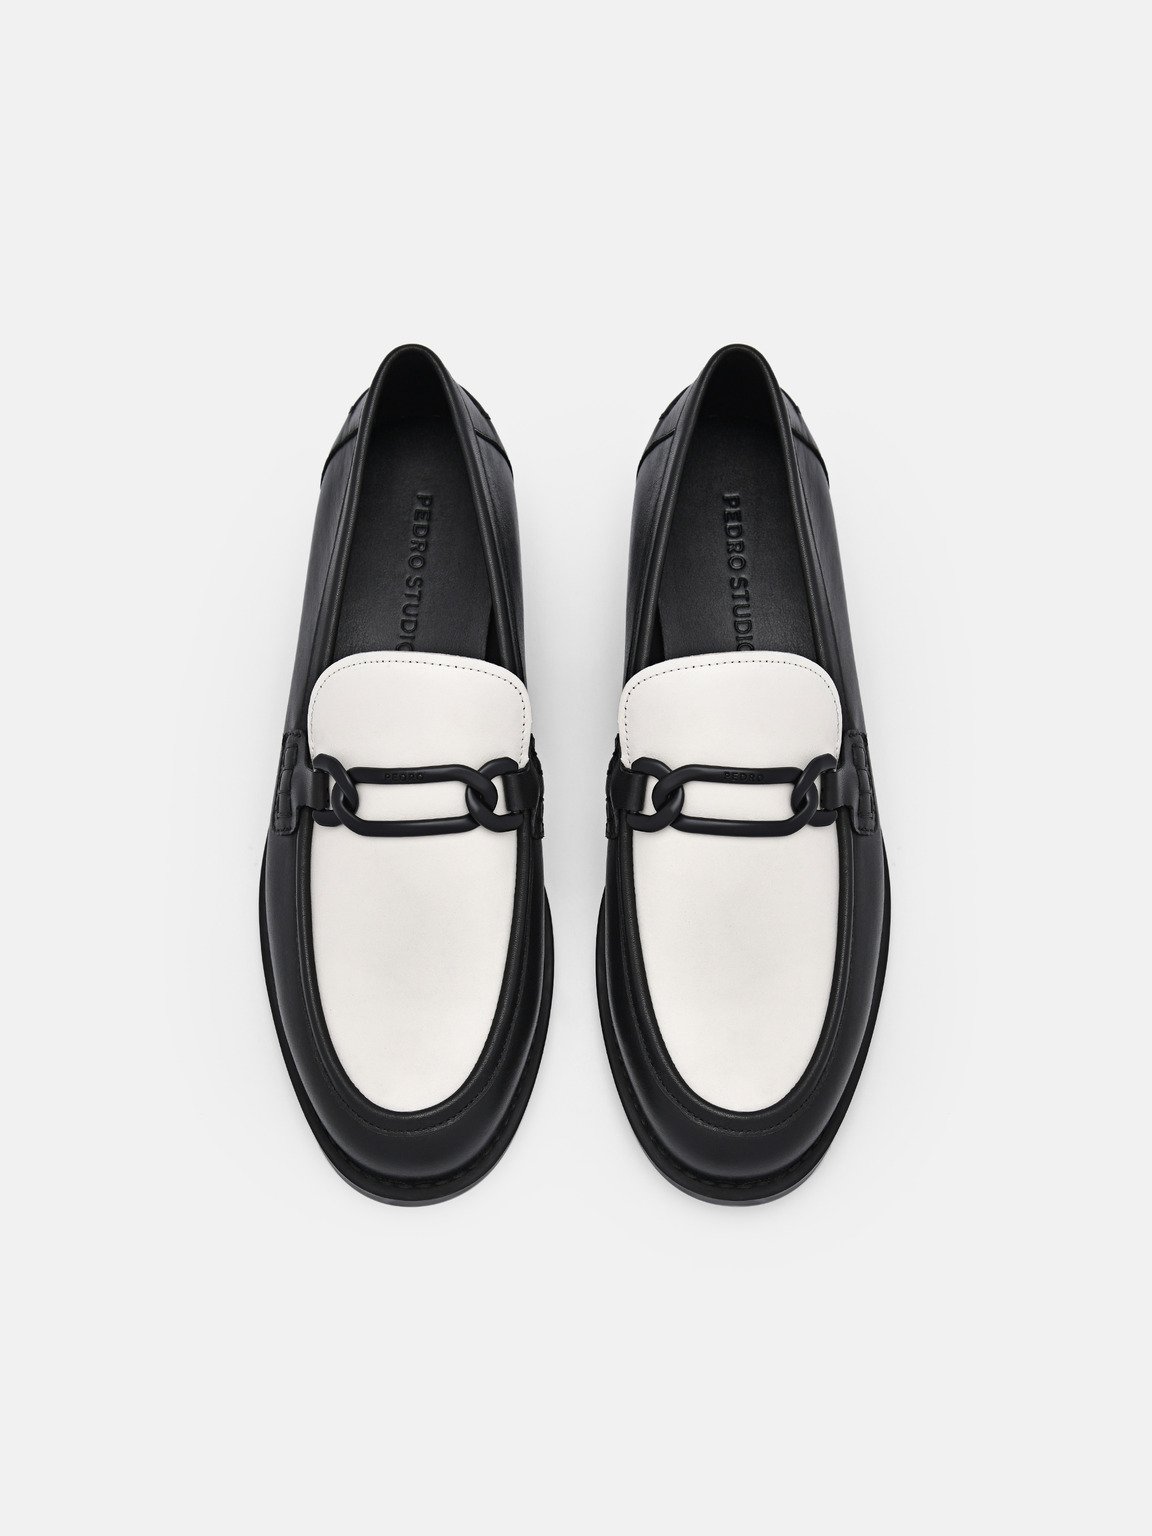 PEDRO工作室Jeanne皮革樂福鞋, 黑色